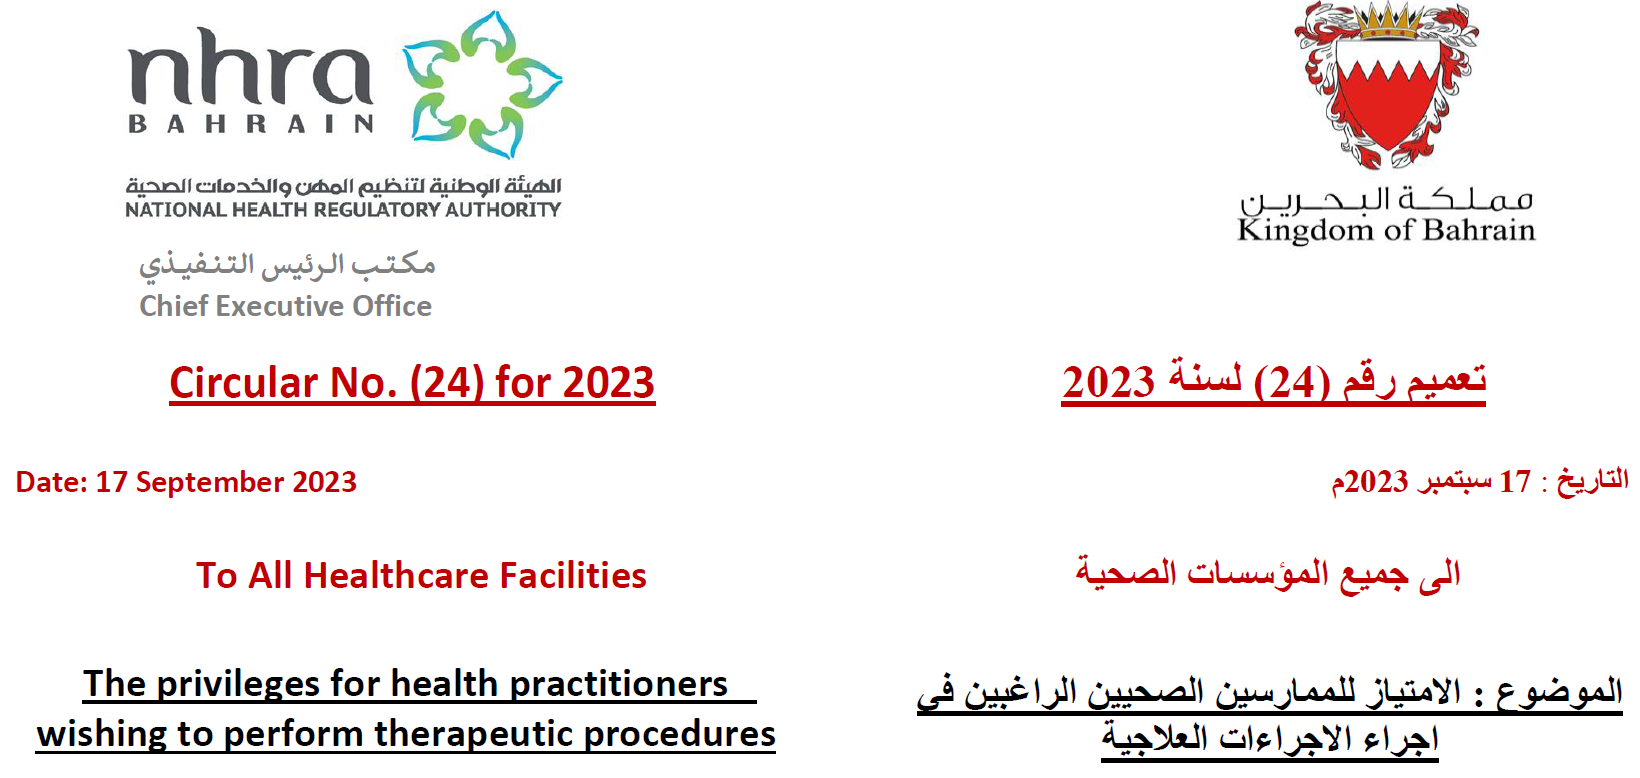 التعميم رقم (24) لسنة 2023: إلى جميع المؤسسات الصحية - الامتياو للممارسين الصحيين في إحراء الإحراءات العلاجية